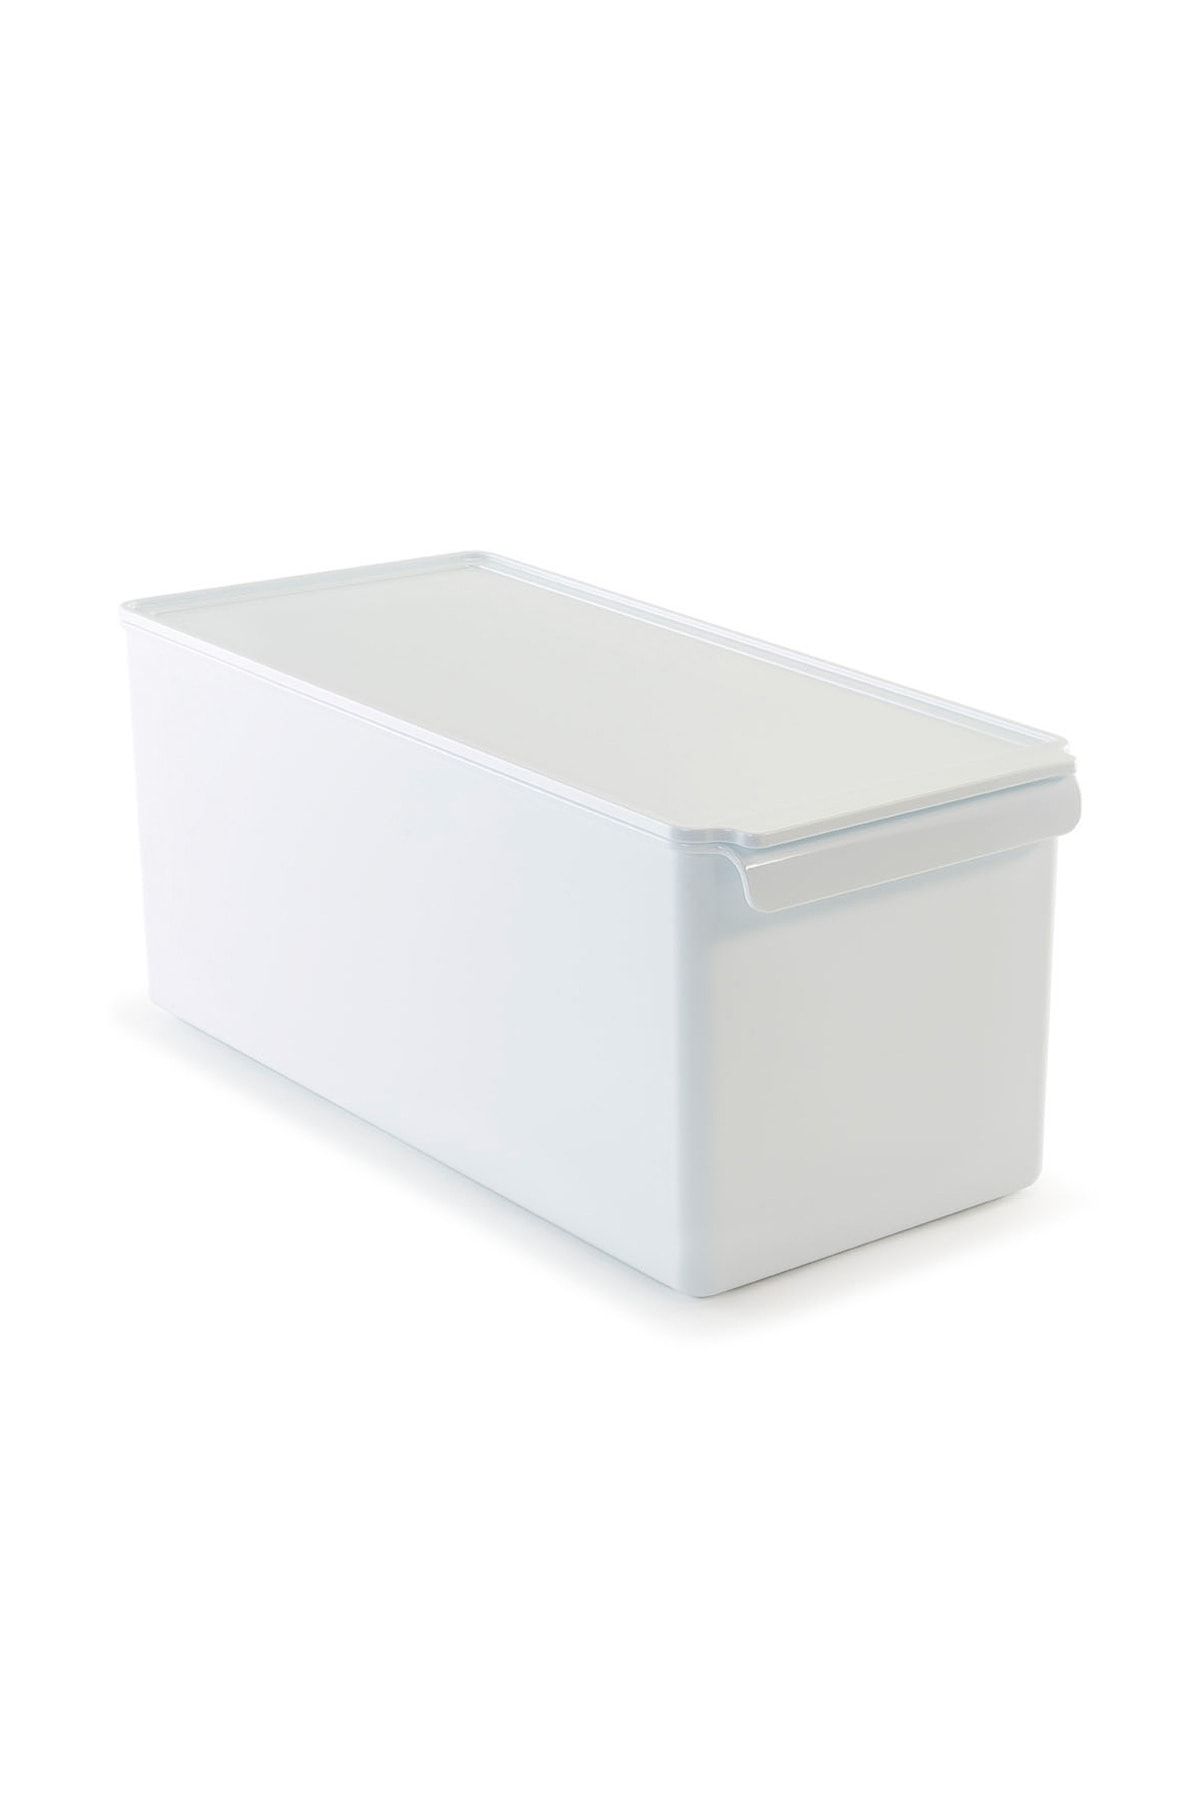 Prima Nova Kapaklı Buzdolabı Dolap Içi Mutfak Banyo Düzenleyici Beyaz 165*355*160 Mm